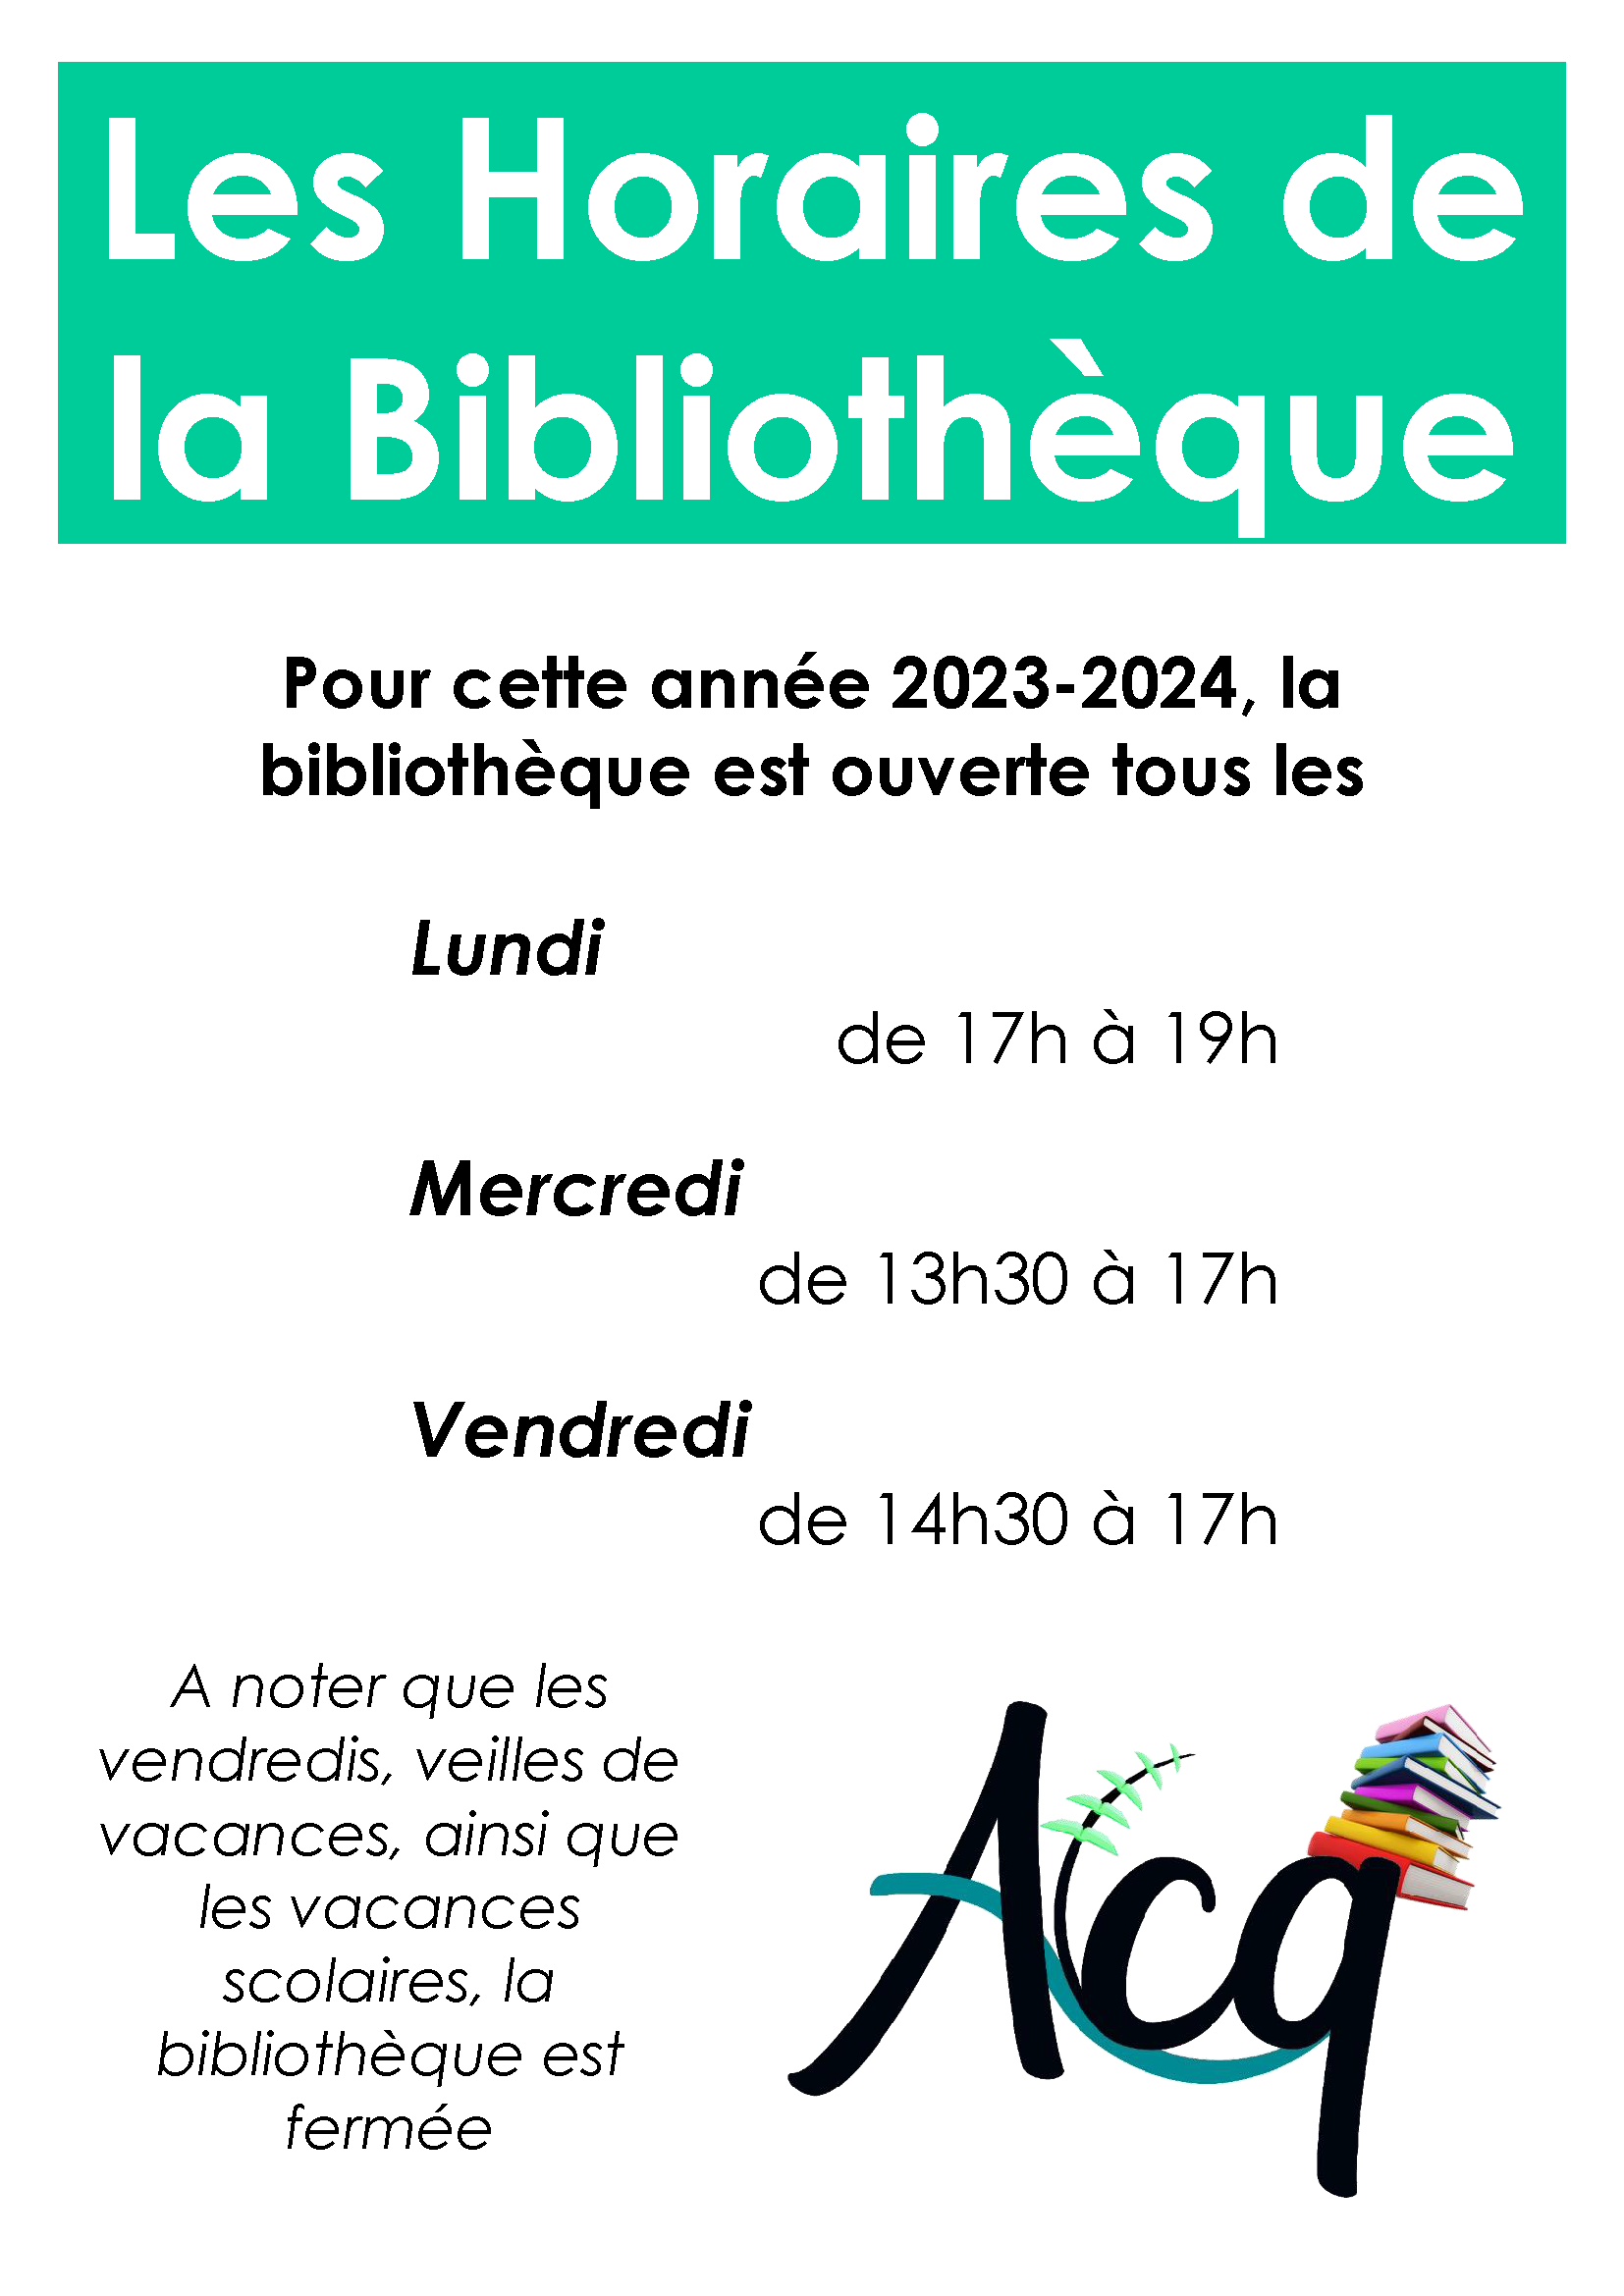 Les Horaires de la Bibliothèque 23-24.png